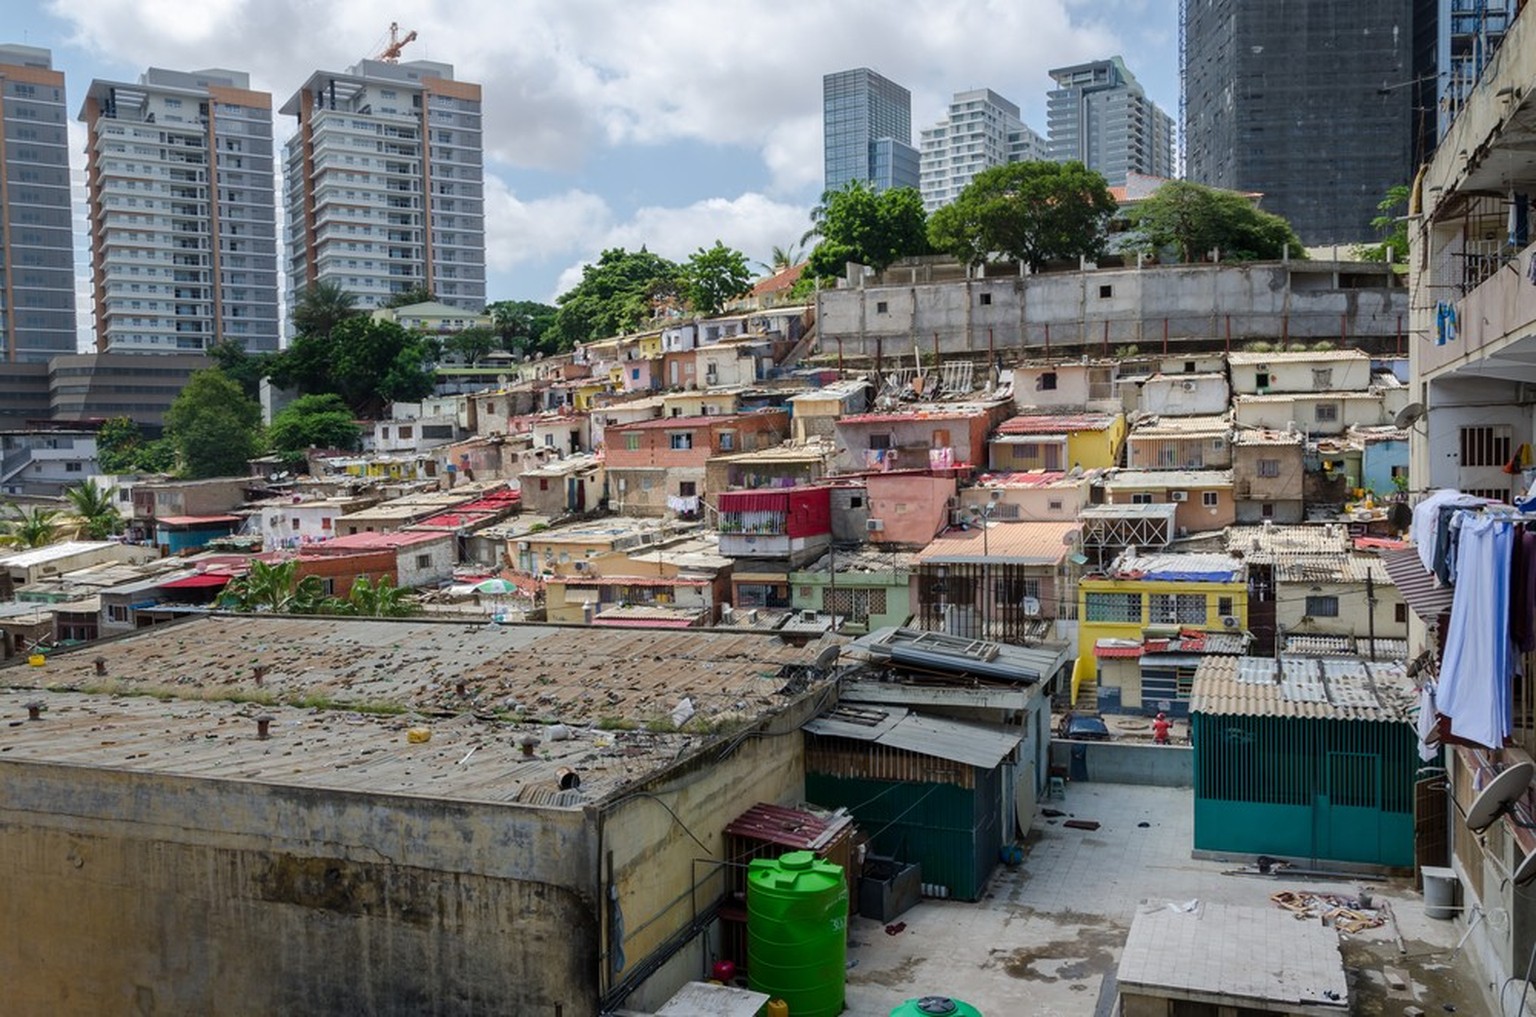 Farbige Häuser der armen Einwohner von Luanda, Angola. Diese Gettos ähneln brasilianischen Favelas. Im Hintergrund bilden die Hochhäuser der Reichen einen krassen Kontrast.